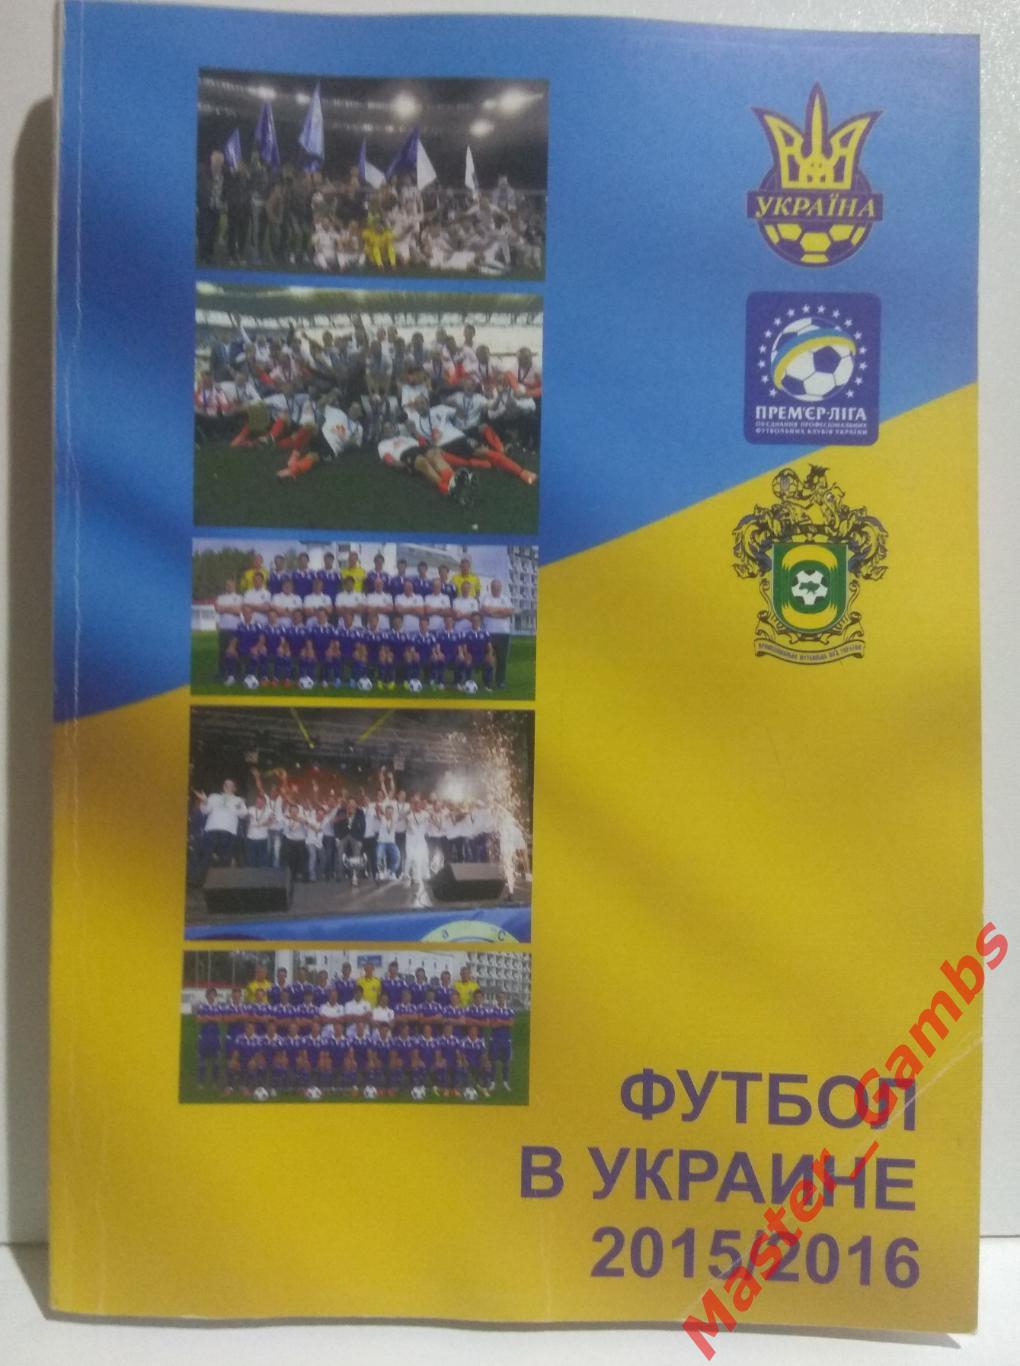 Ландер - Футбол в Украине #25 / Вся футбольная Европа #6 2015/2016*